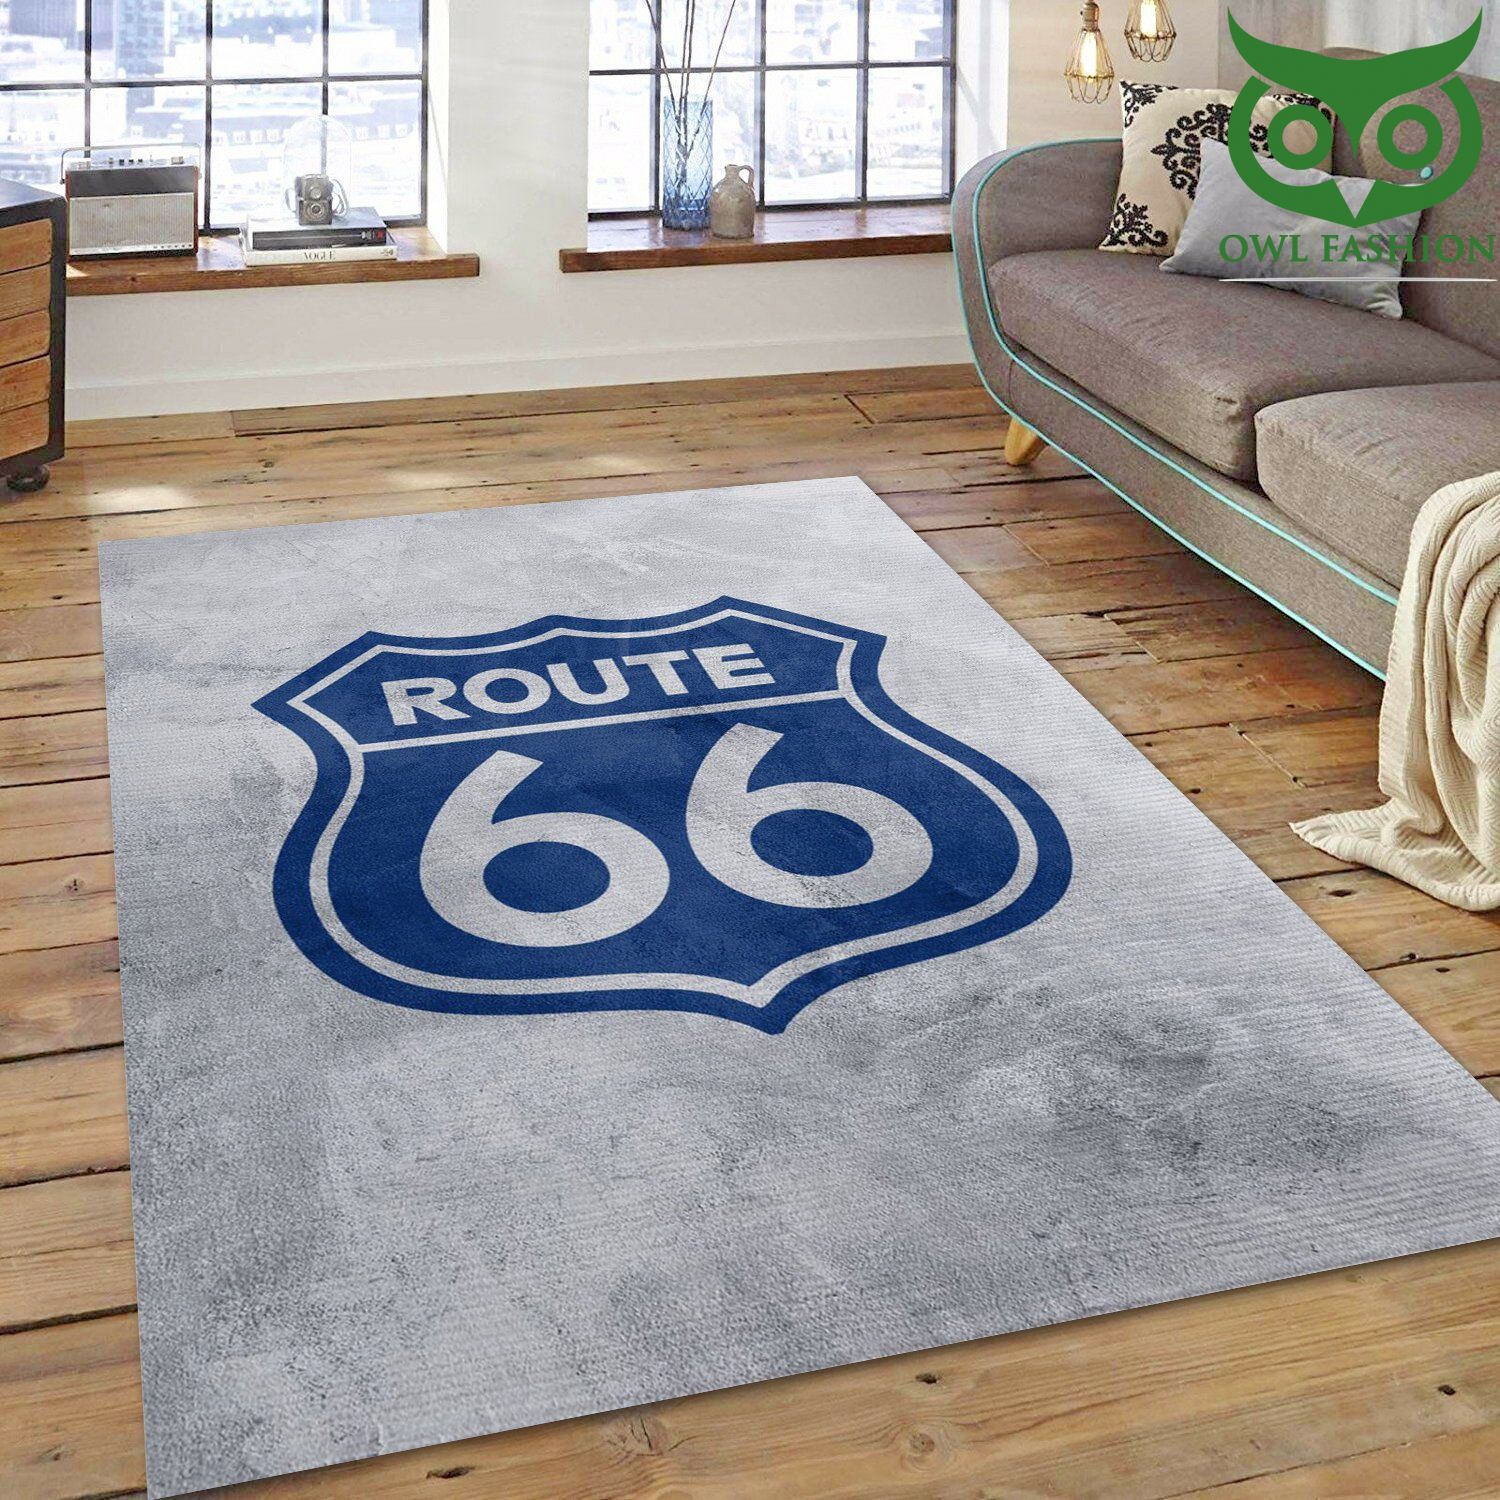 Route 66 Art Living Room Carpet Rug 